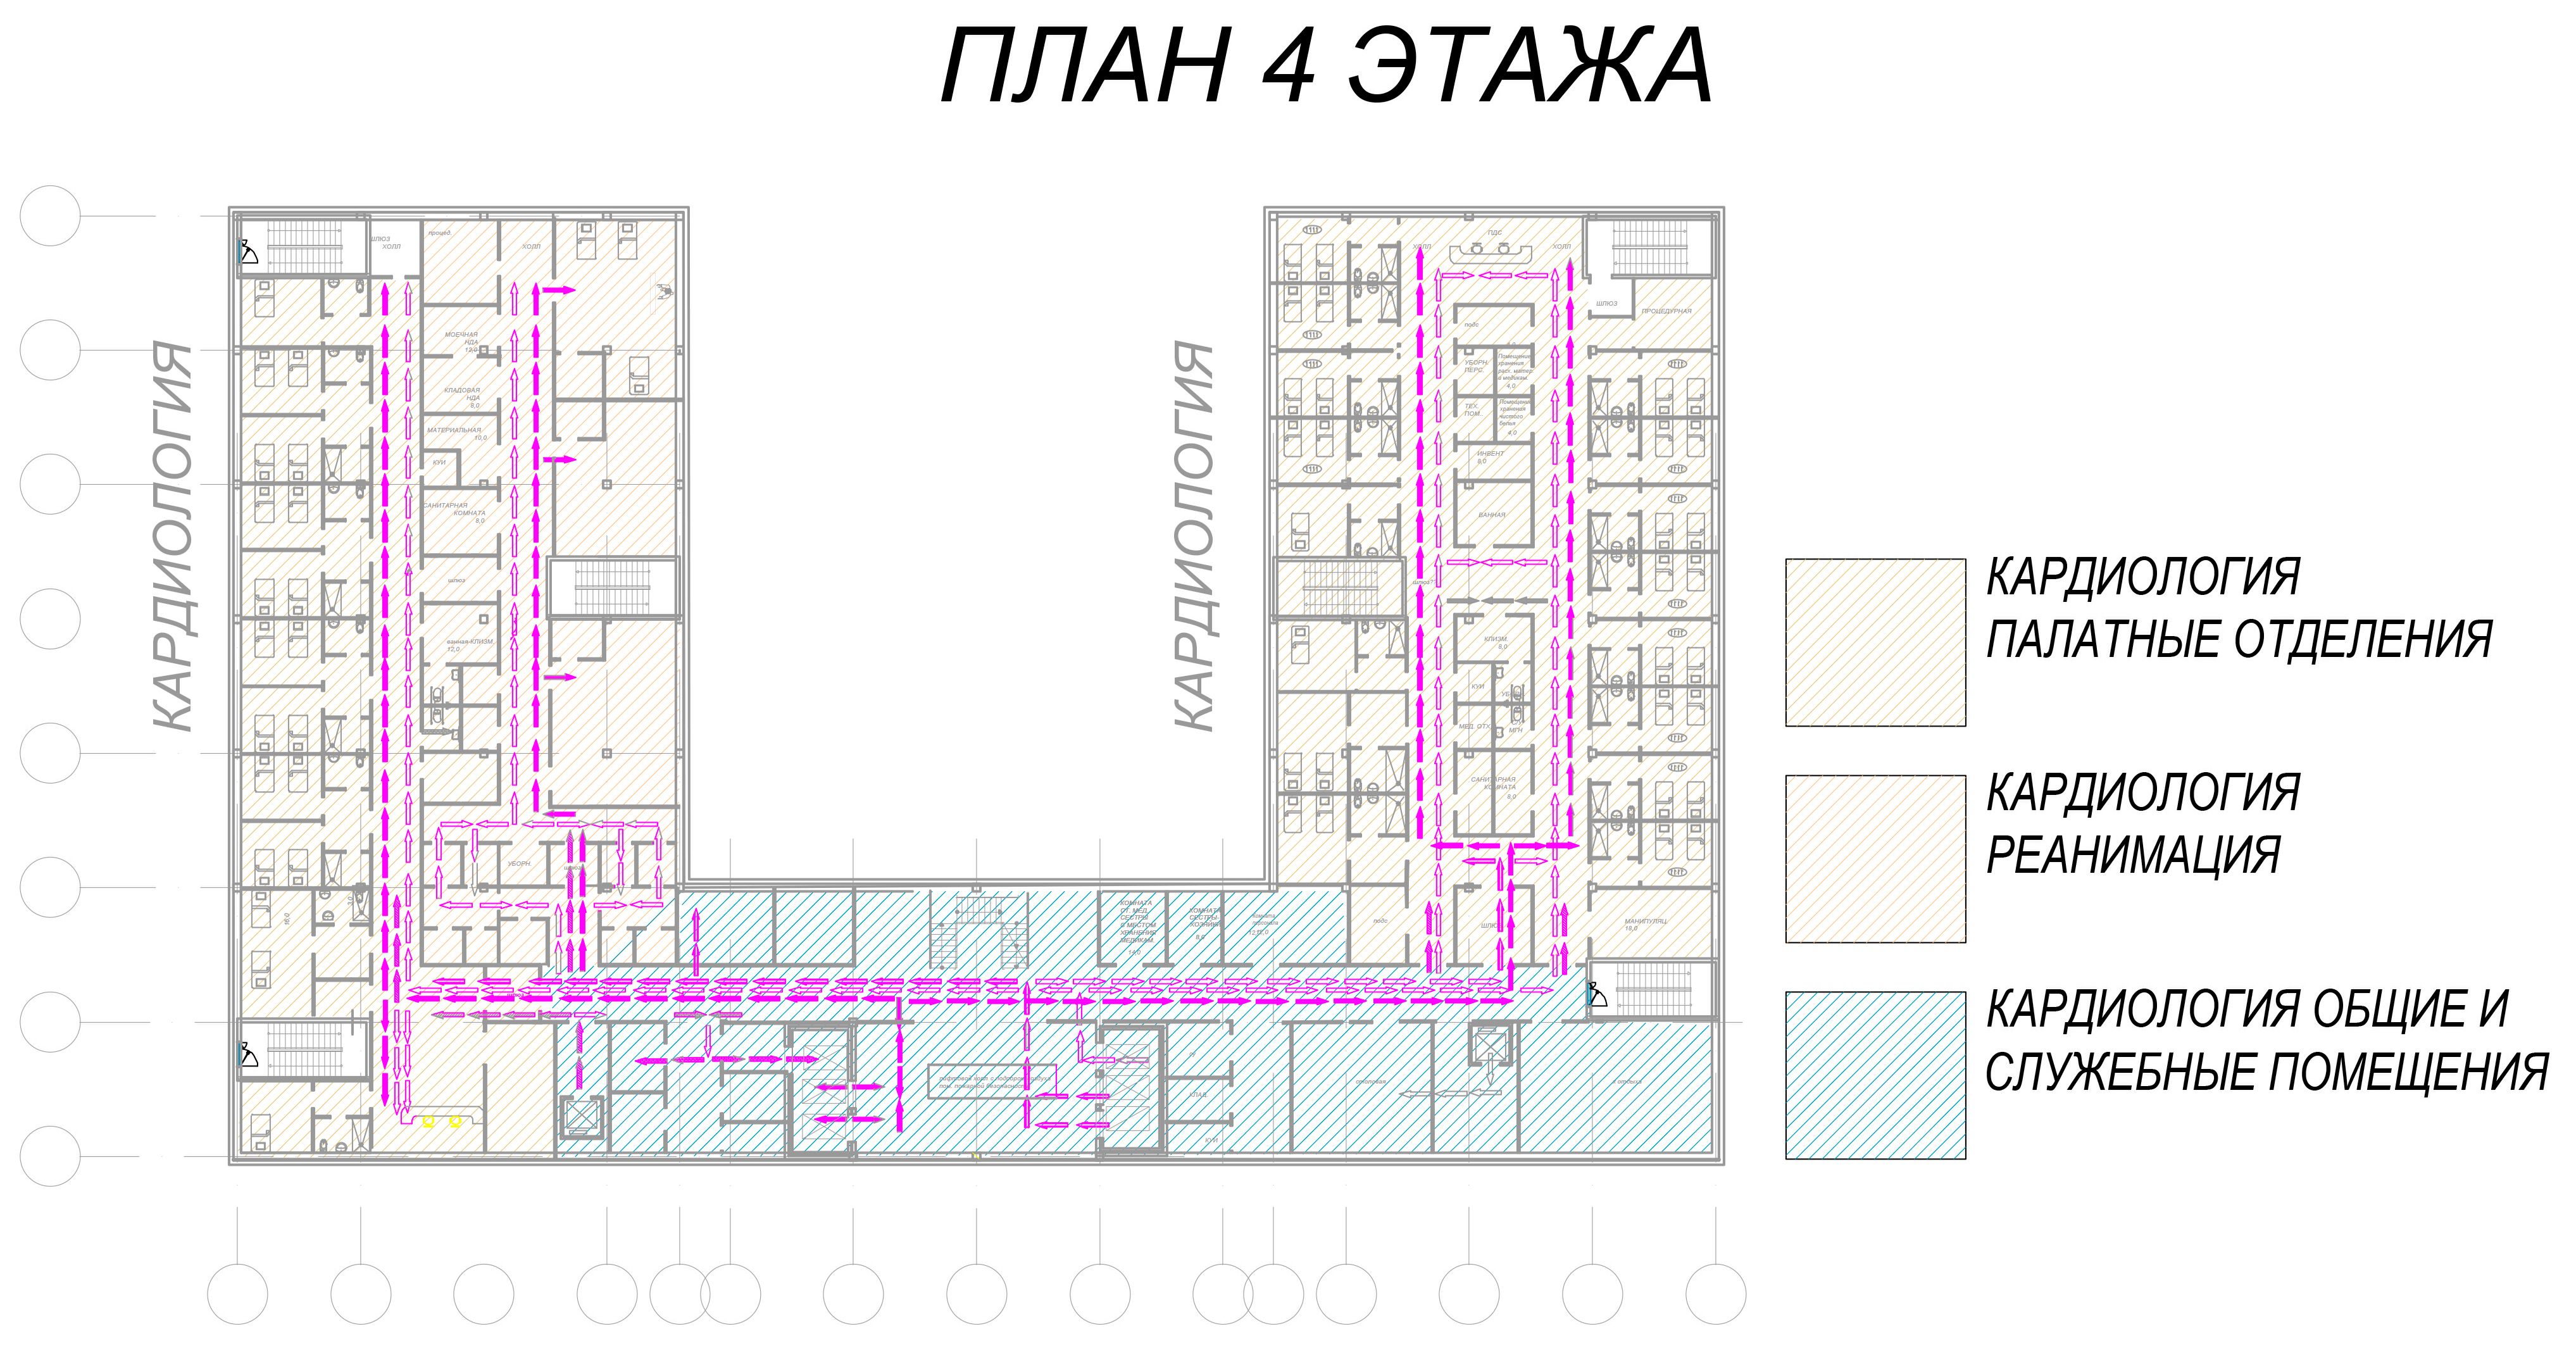 Проект центральной районной больницы проектной мощностью на 400 коек. ООО «Профиль», г. Санкт- Петербург